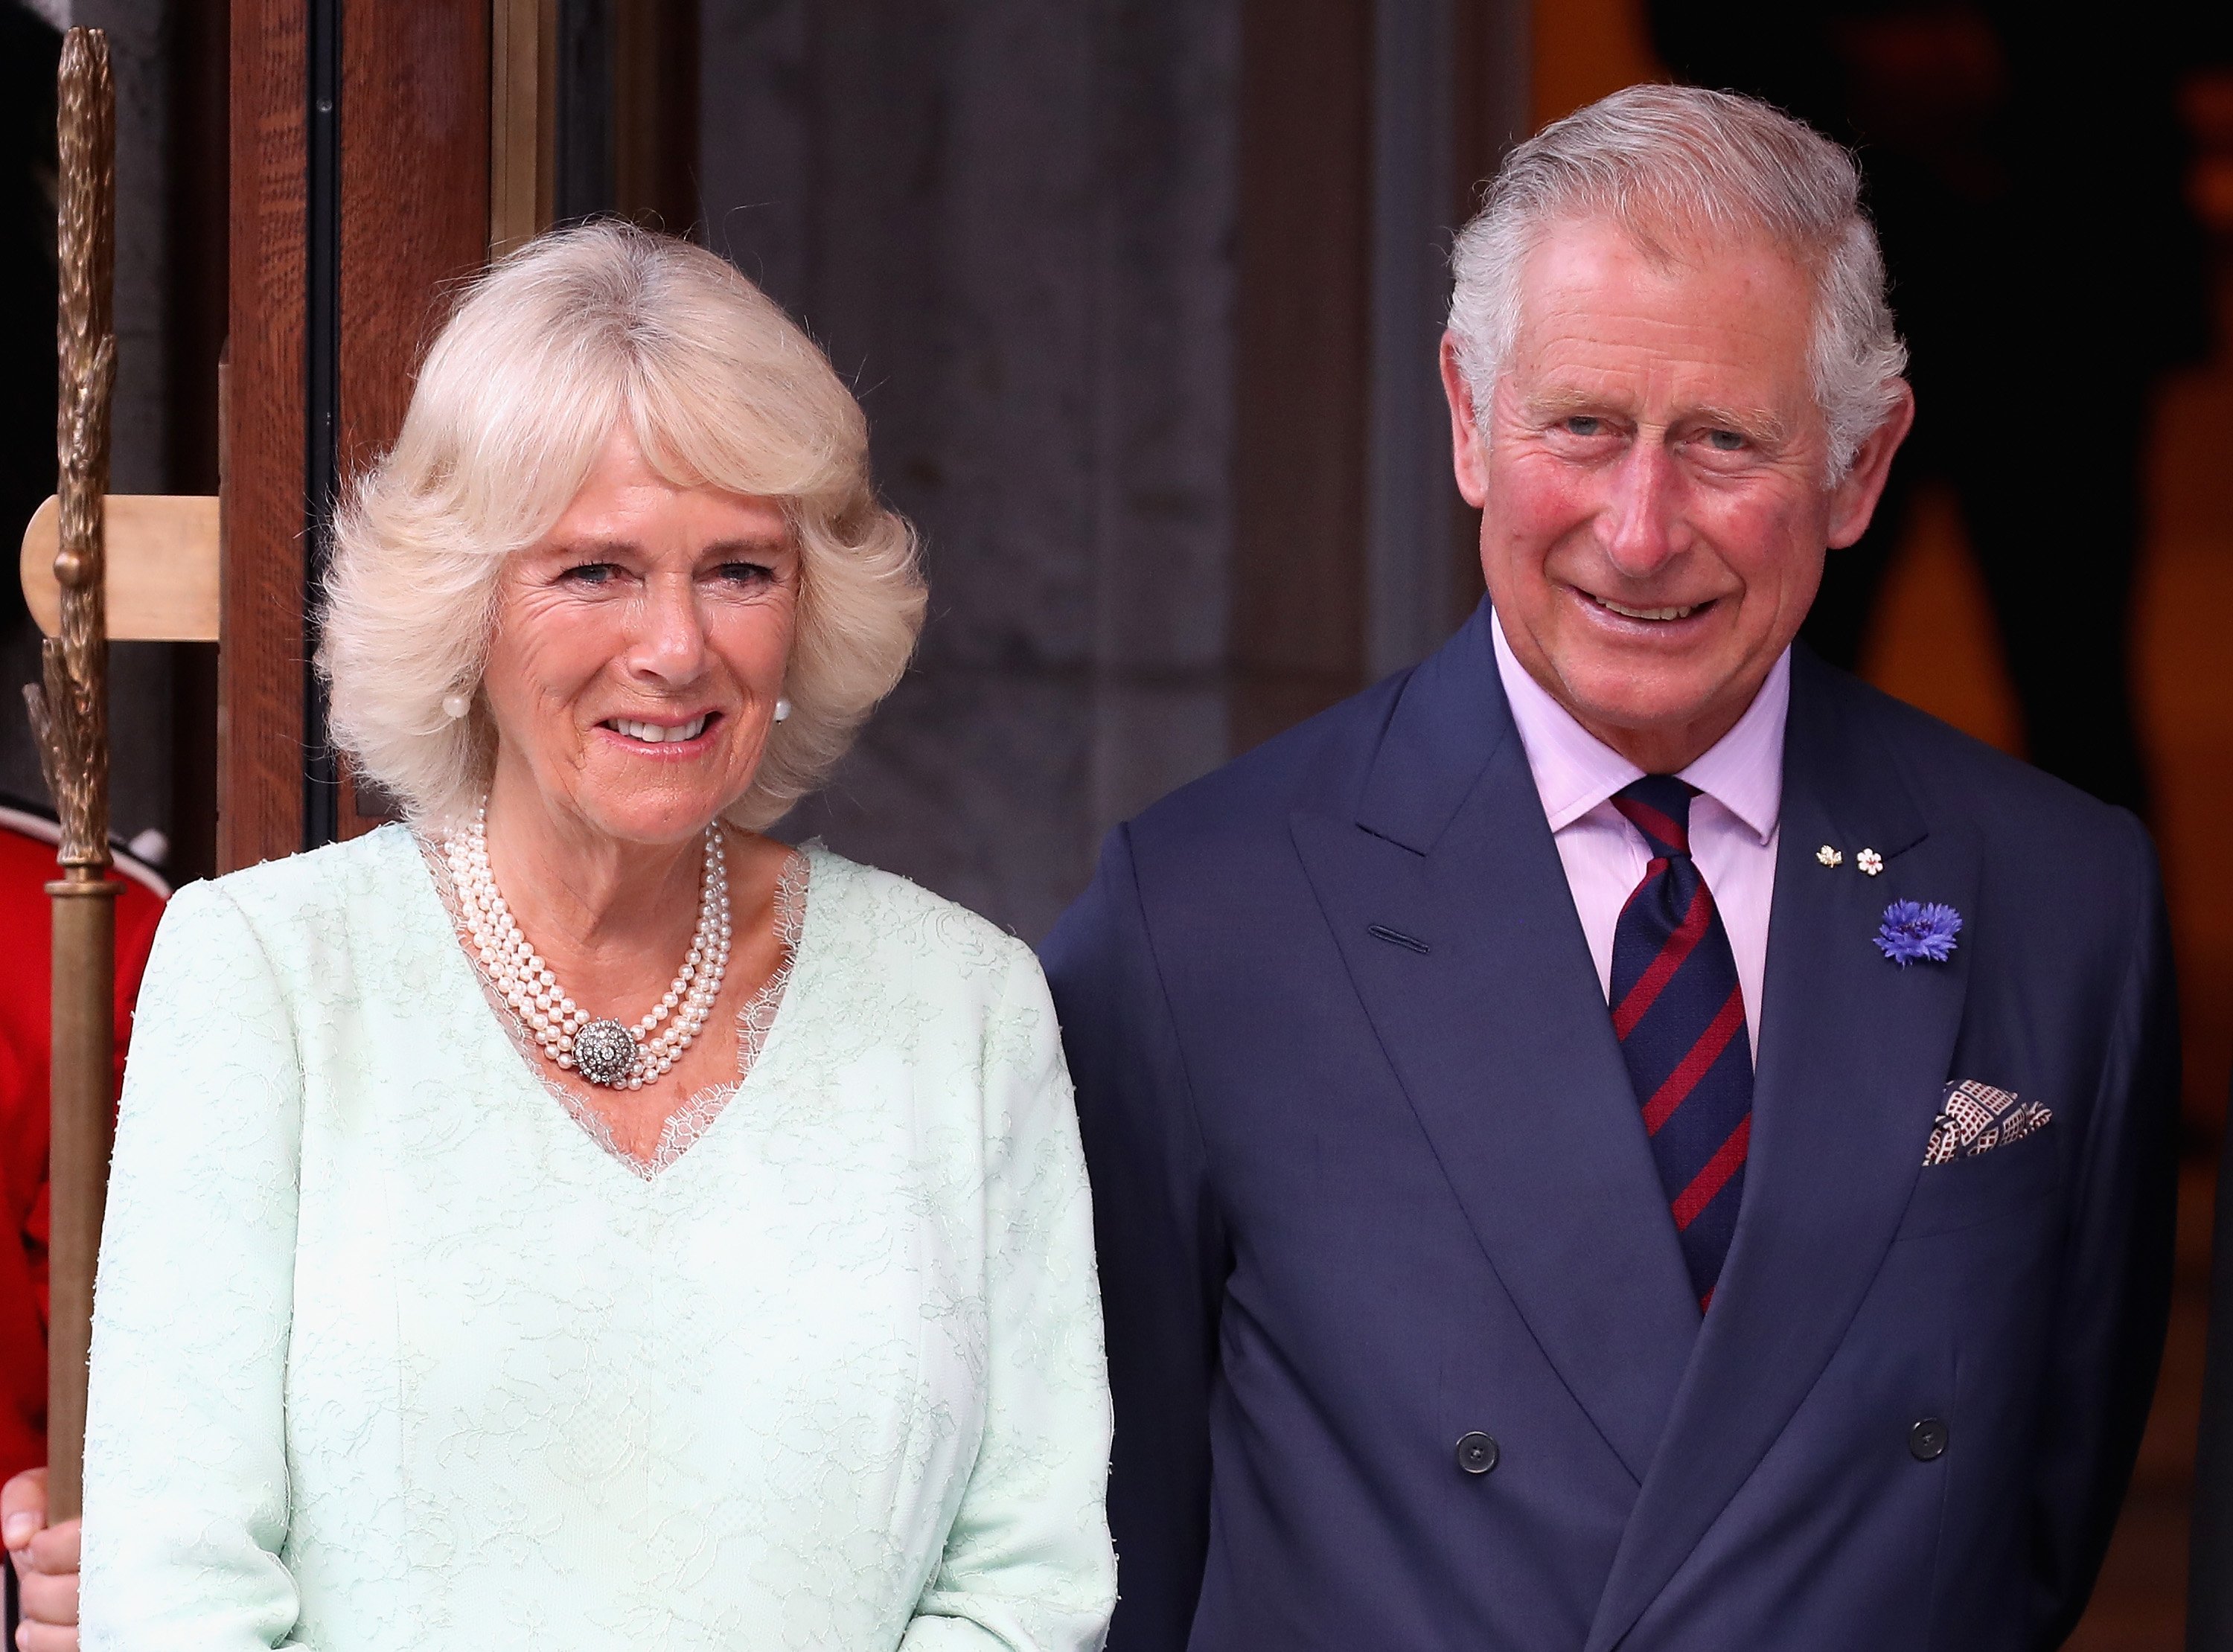 König Charles III. und seine Queen Consort in Kanada 2017. | Quelle: Getty Images 